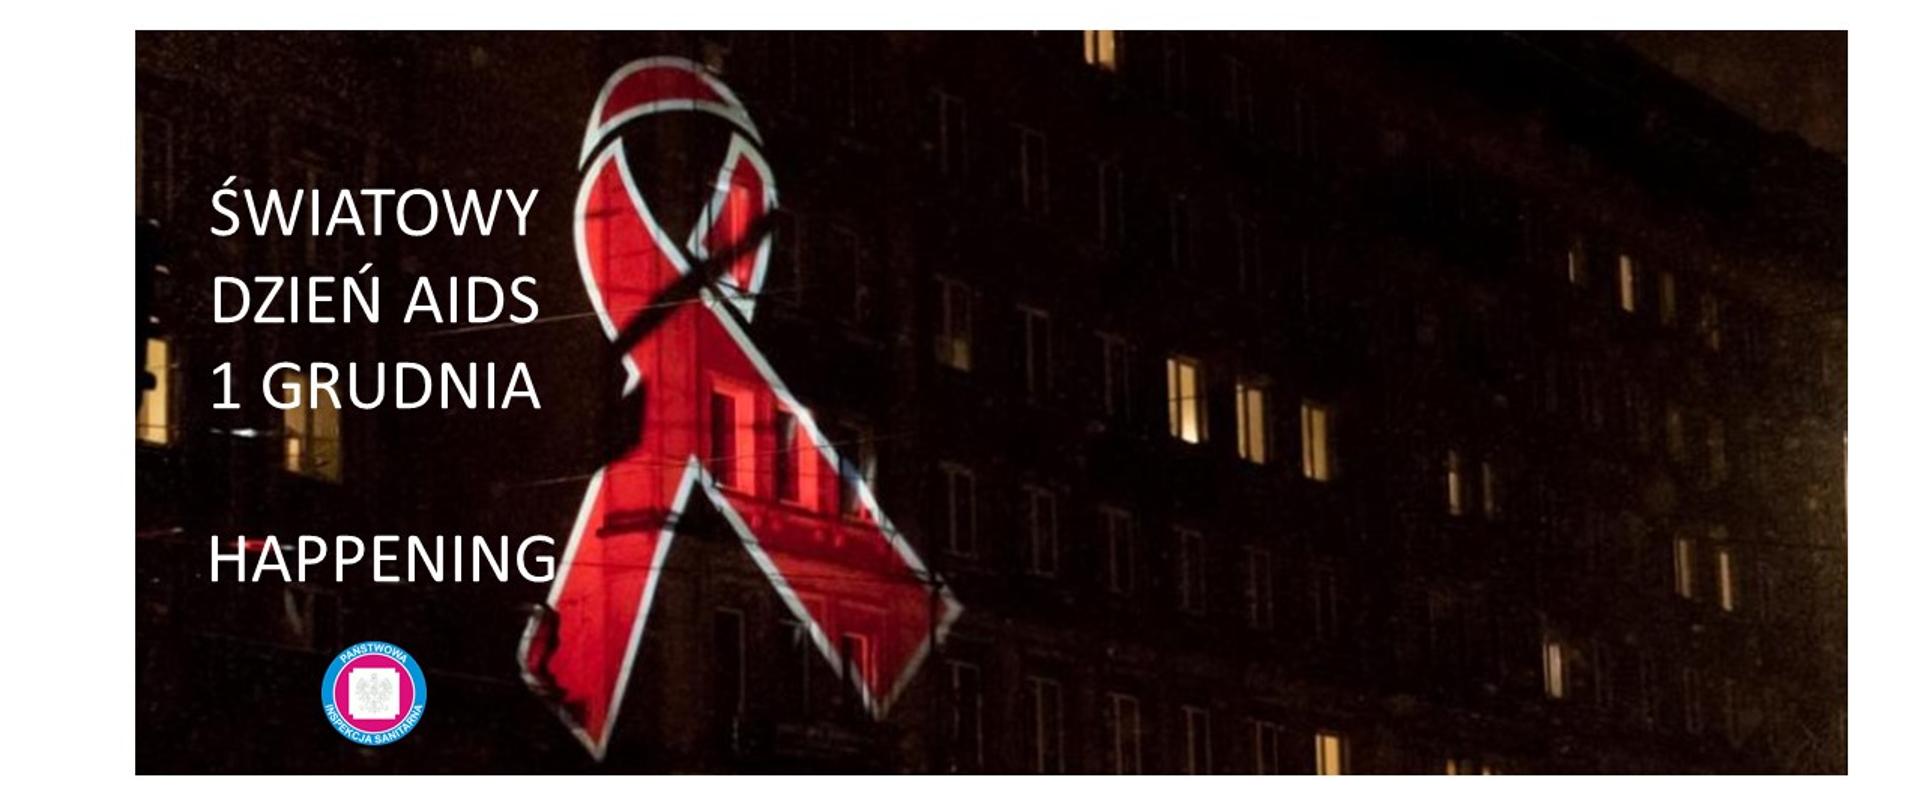 Na zdjęciu jest noc. widać blok w którym świecą się światła. Na budynku projekcja czerwonej wstążki symbolu solidarności z osobami HIV/AIDS